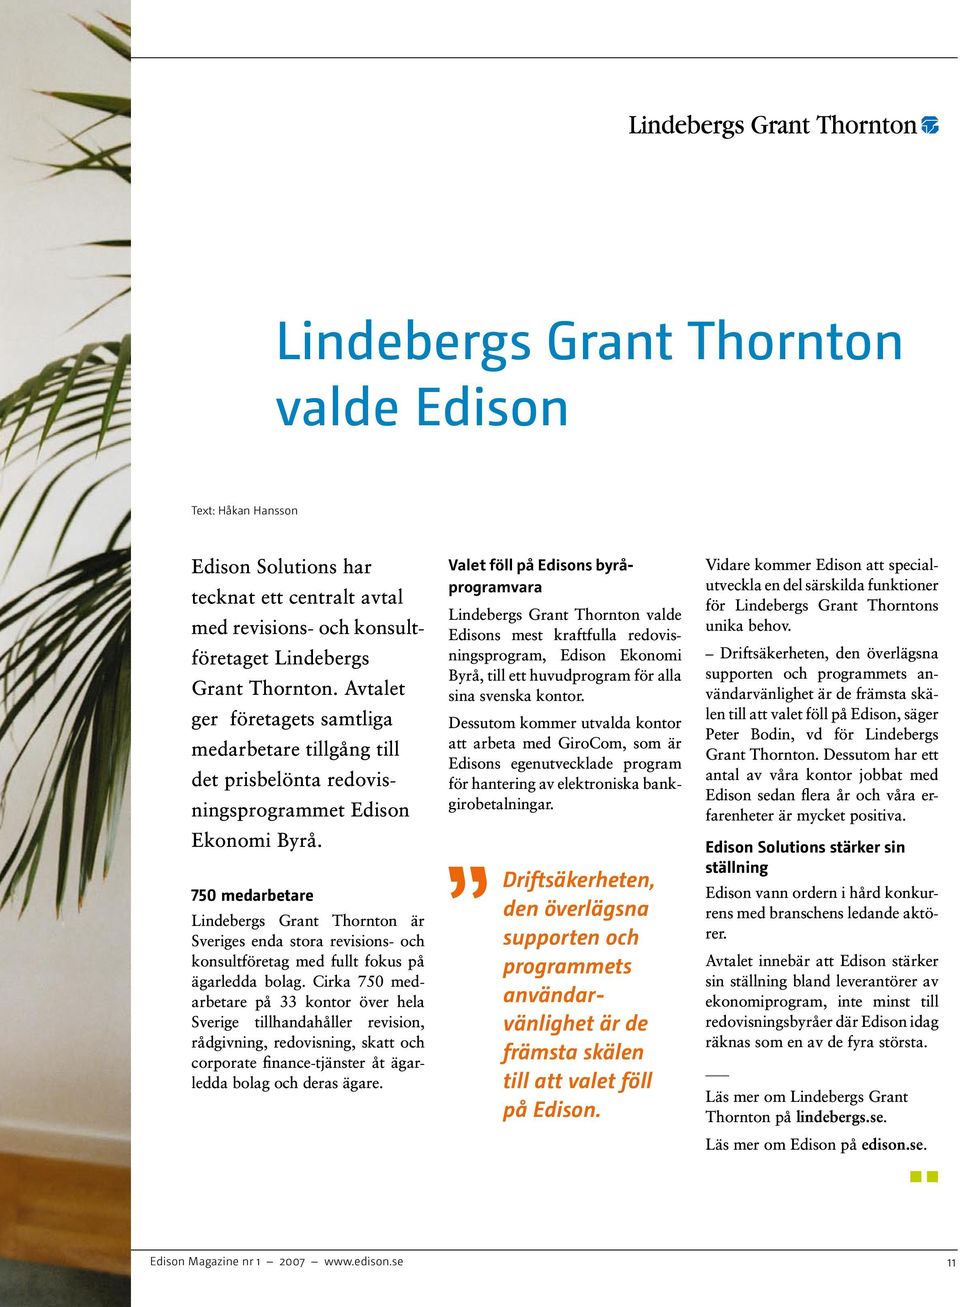 750 medarbetare Lindebergs Grant Thornton är Sveriges enda stora revisions- och konsultföretag med fullt fokus på ägarledda bolag.